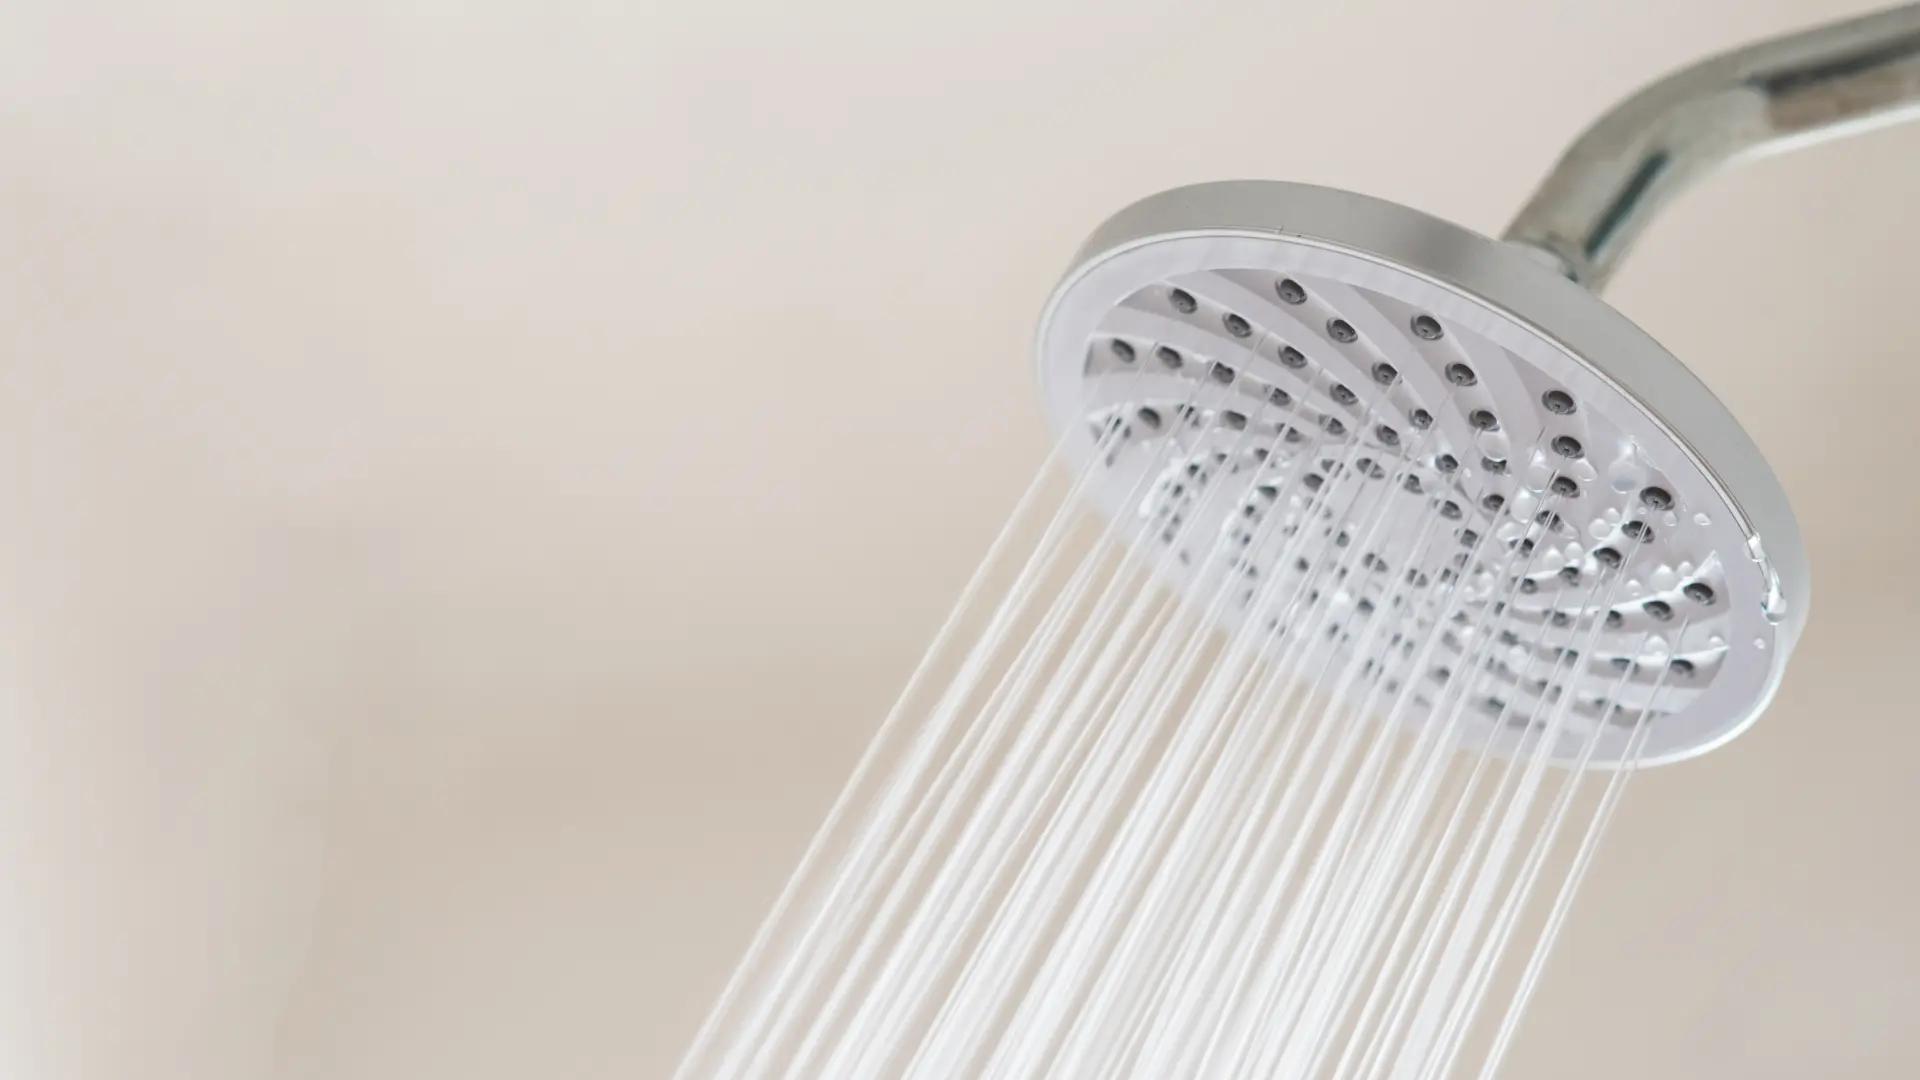 regadera inteligente que recicla el agua de la ducha - Cuánto gasta una persona promedio en bañarse